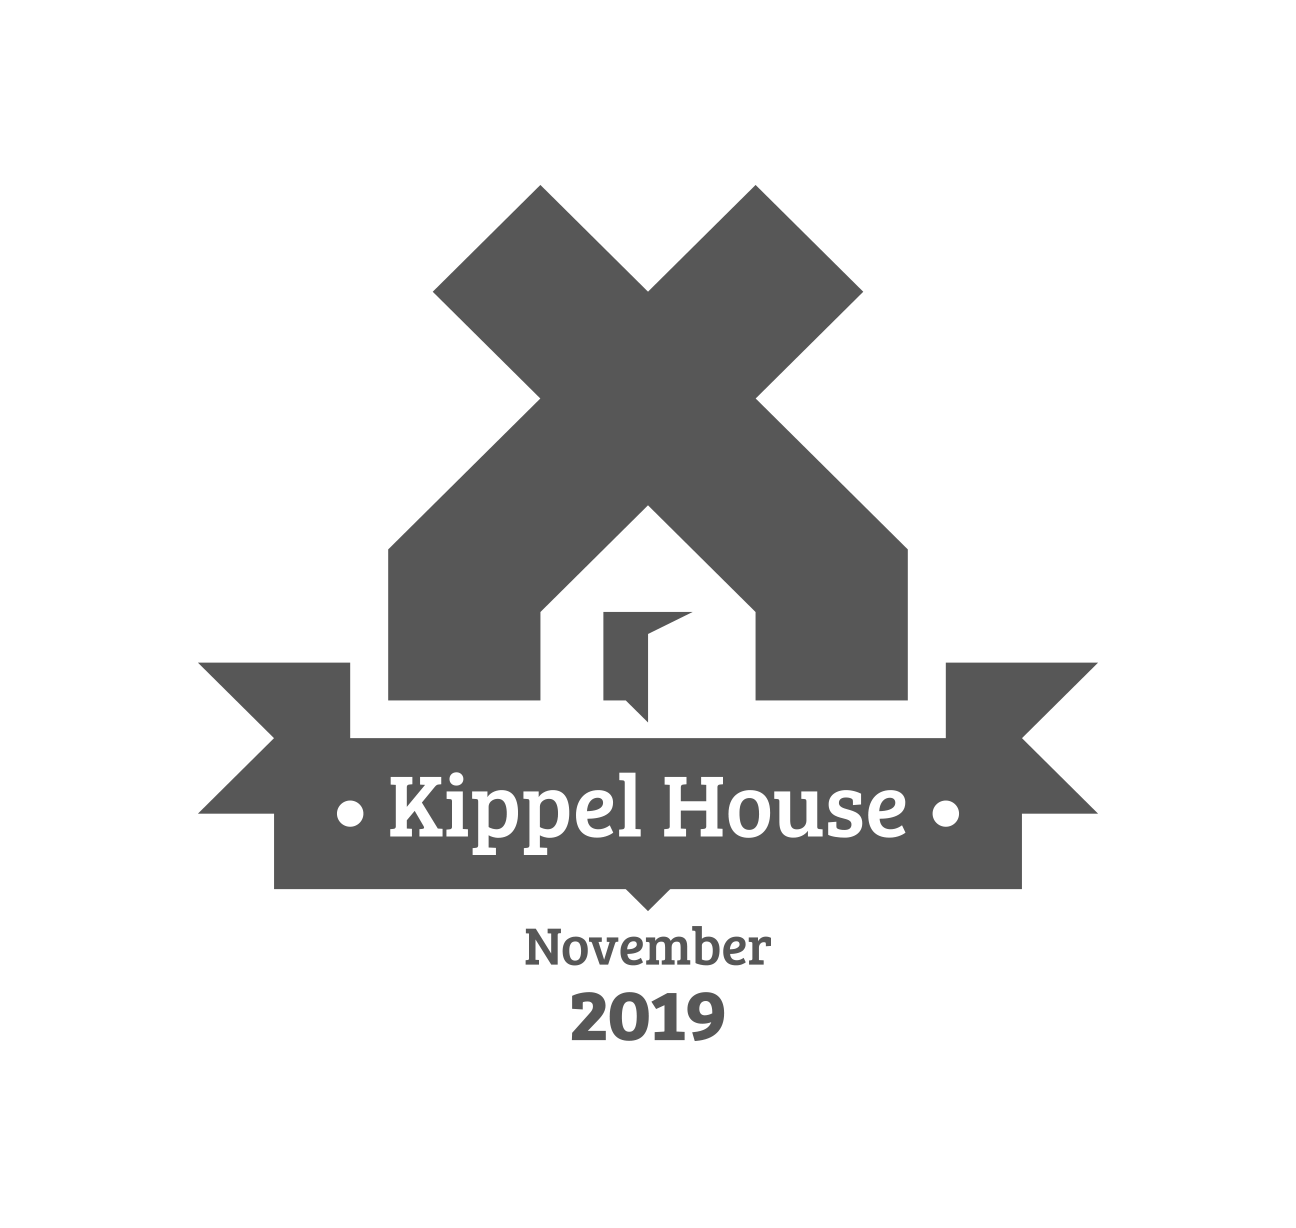 Kippel House